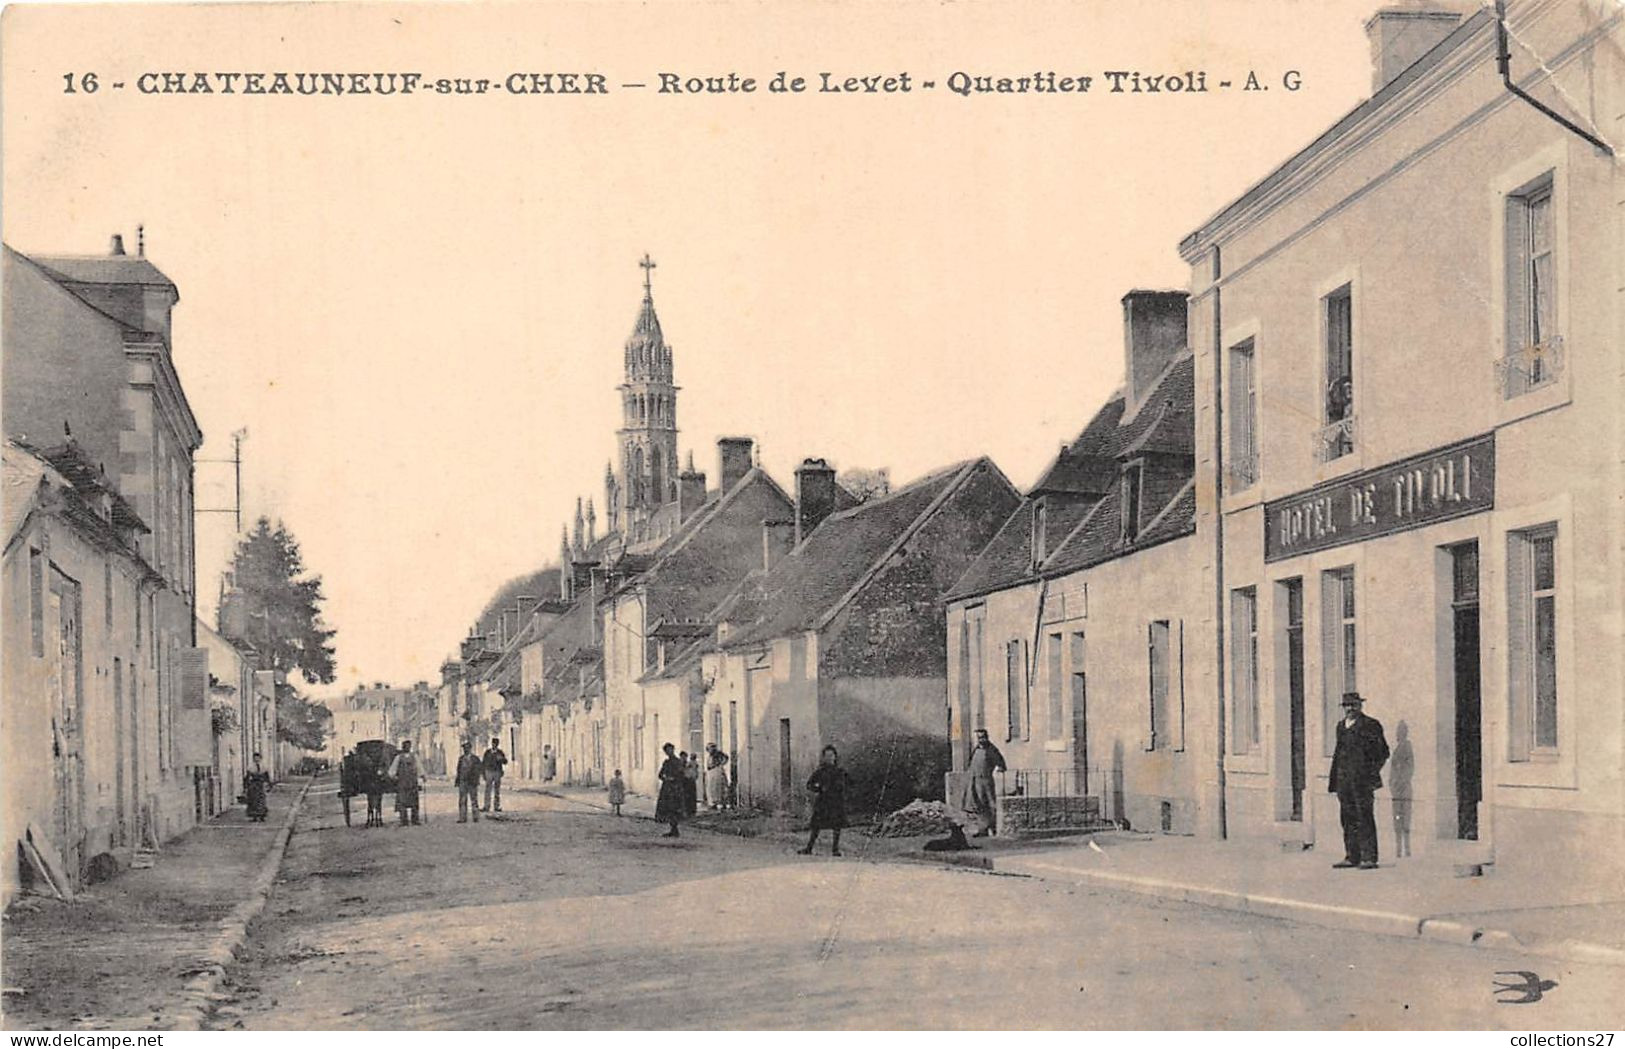 18-CHATEAUNEUF-SUR-CHER- ROUTE DE LEVET QUARTIER TIVOLI - Chateauneuf Sur Cher